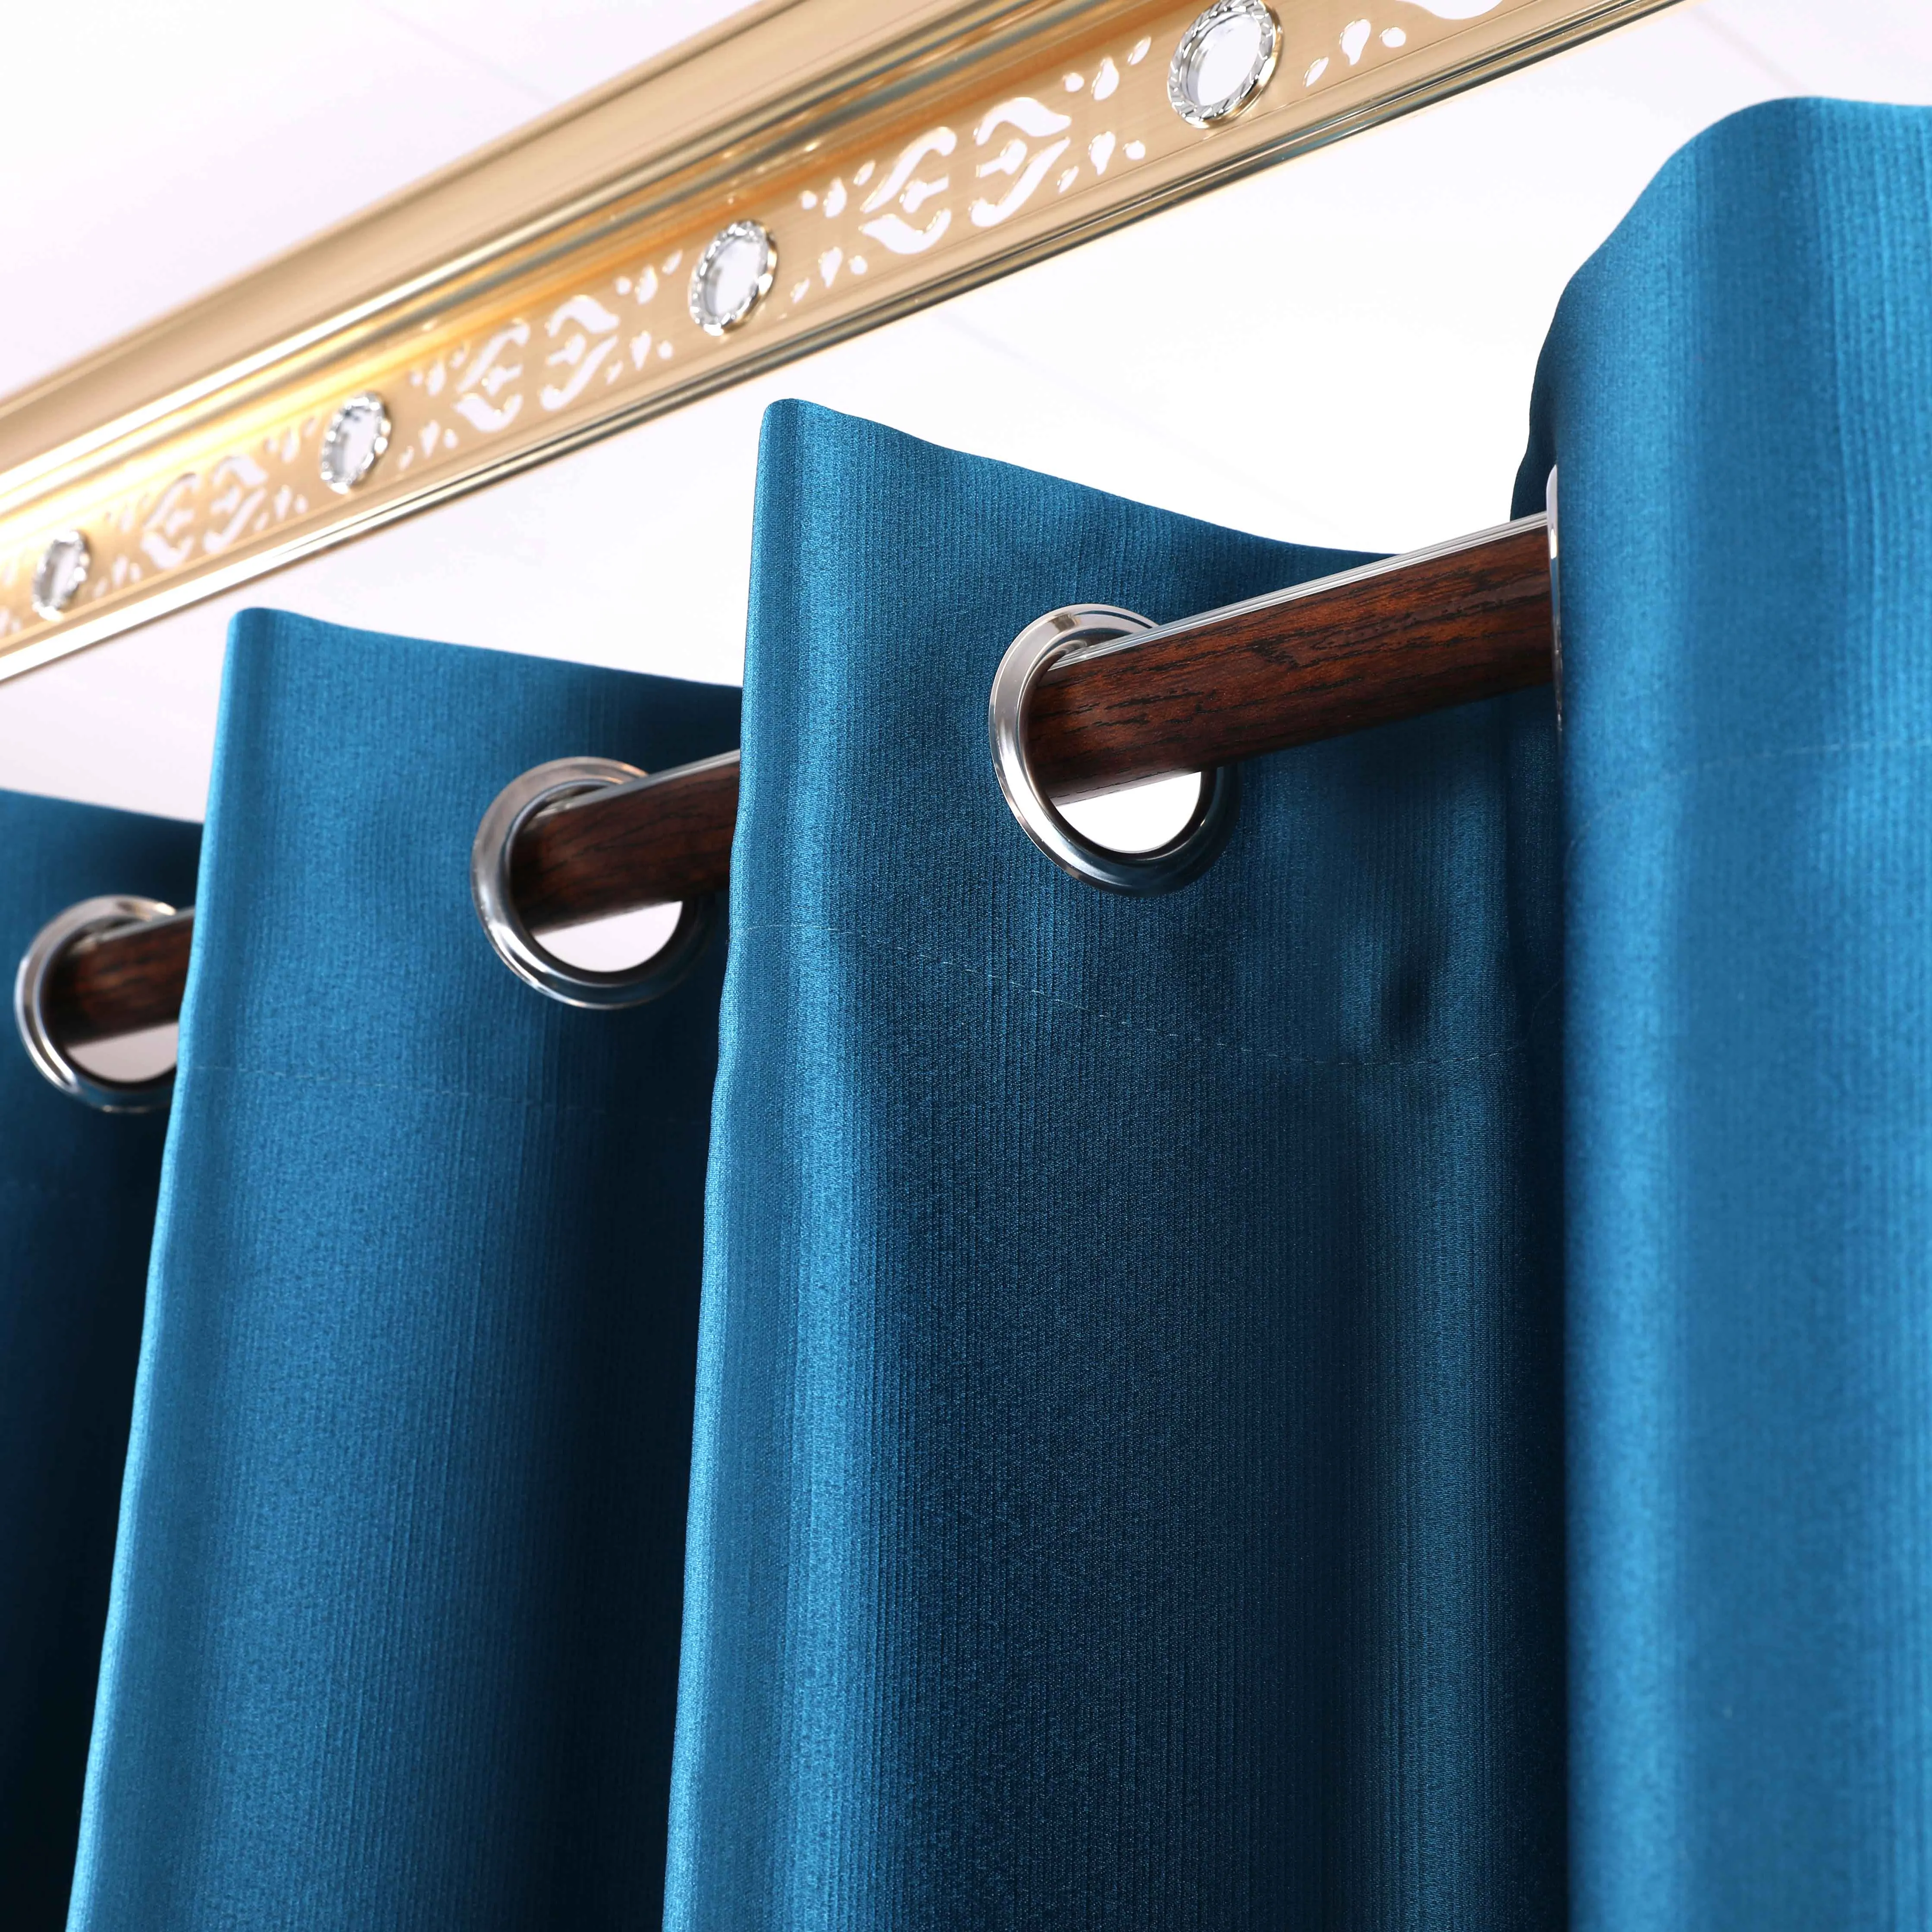 Klasik yüksek gölgeleme karartma perdesi katı Polyester perde oturma odası için tasarım